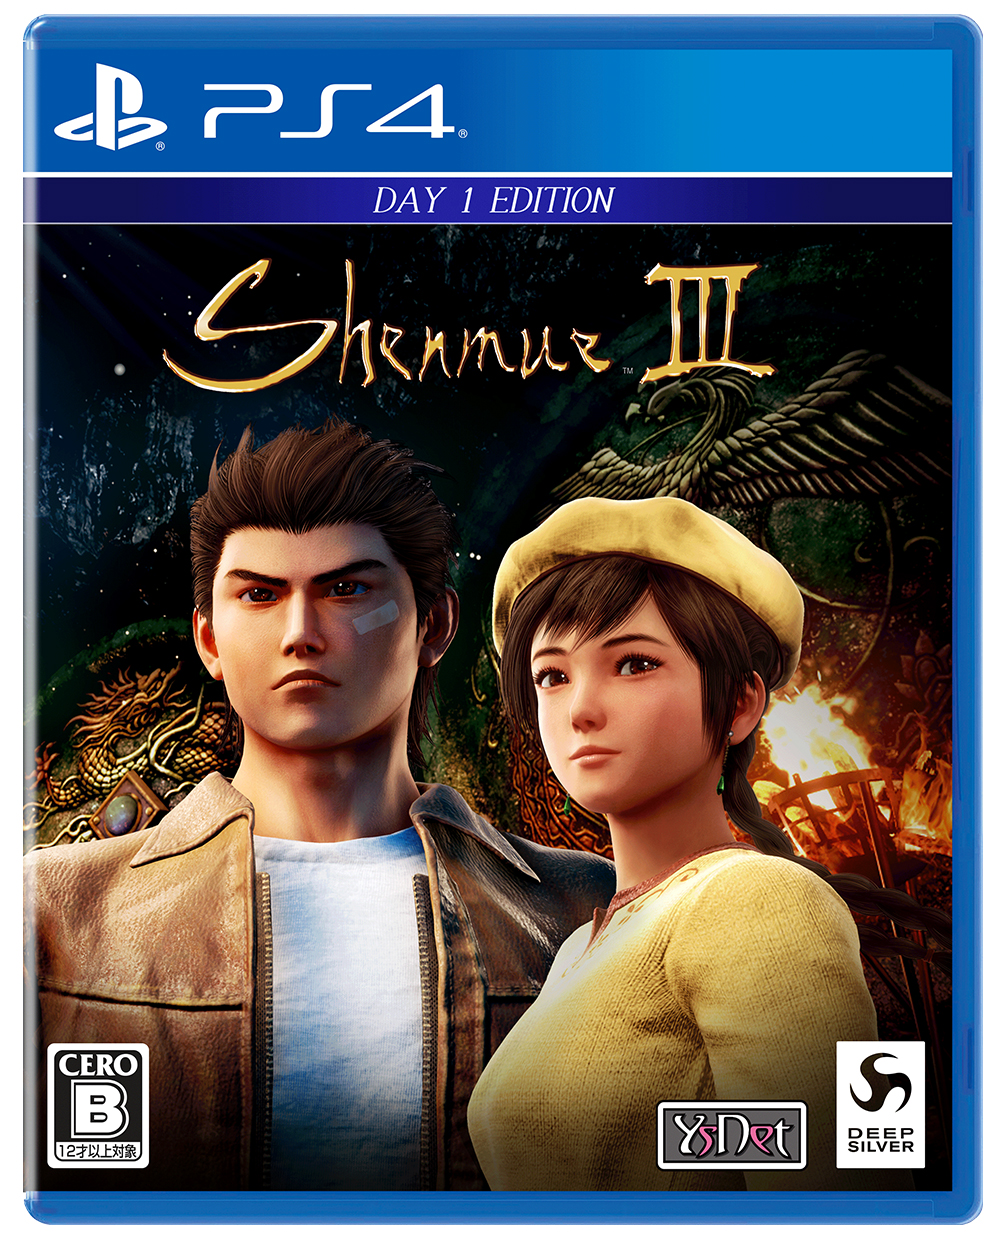 PS4用「シェンムーIII-リテールDay1エディション」11月19日発売決定